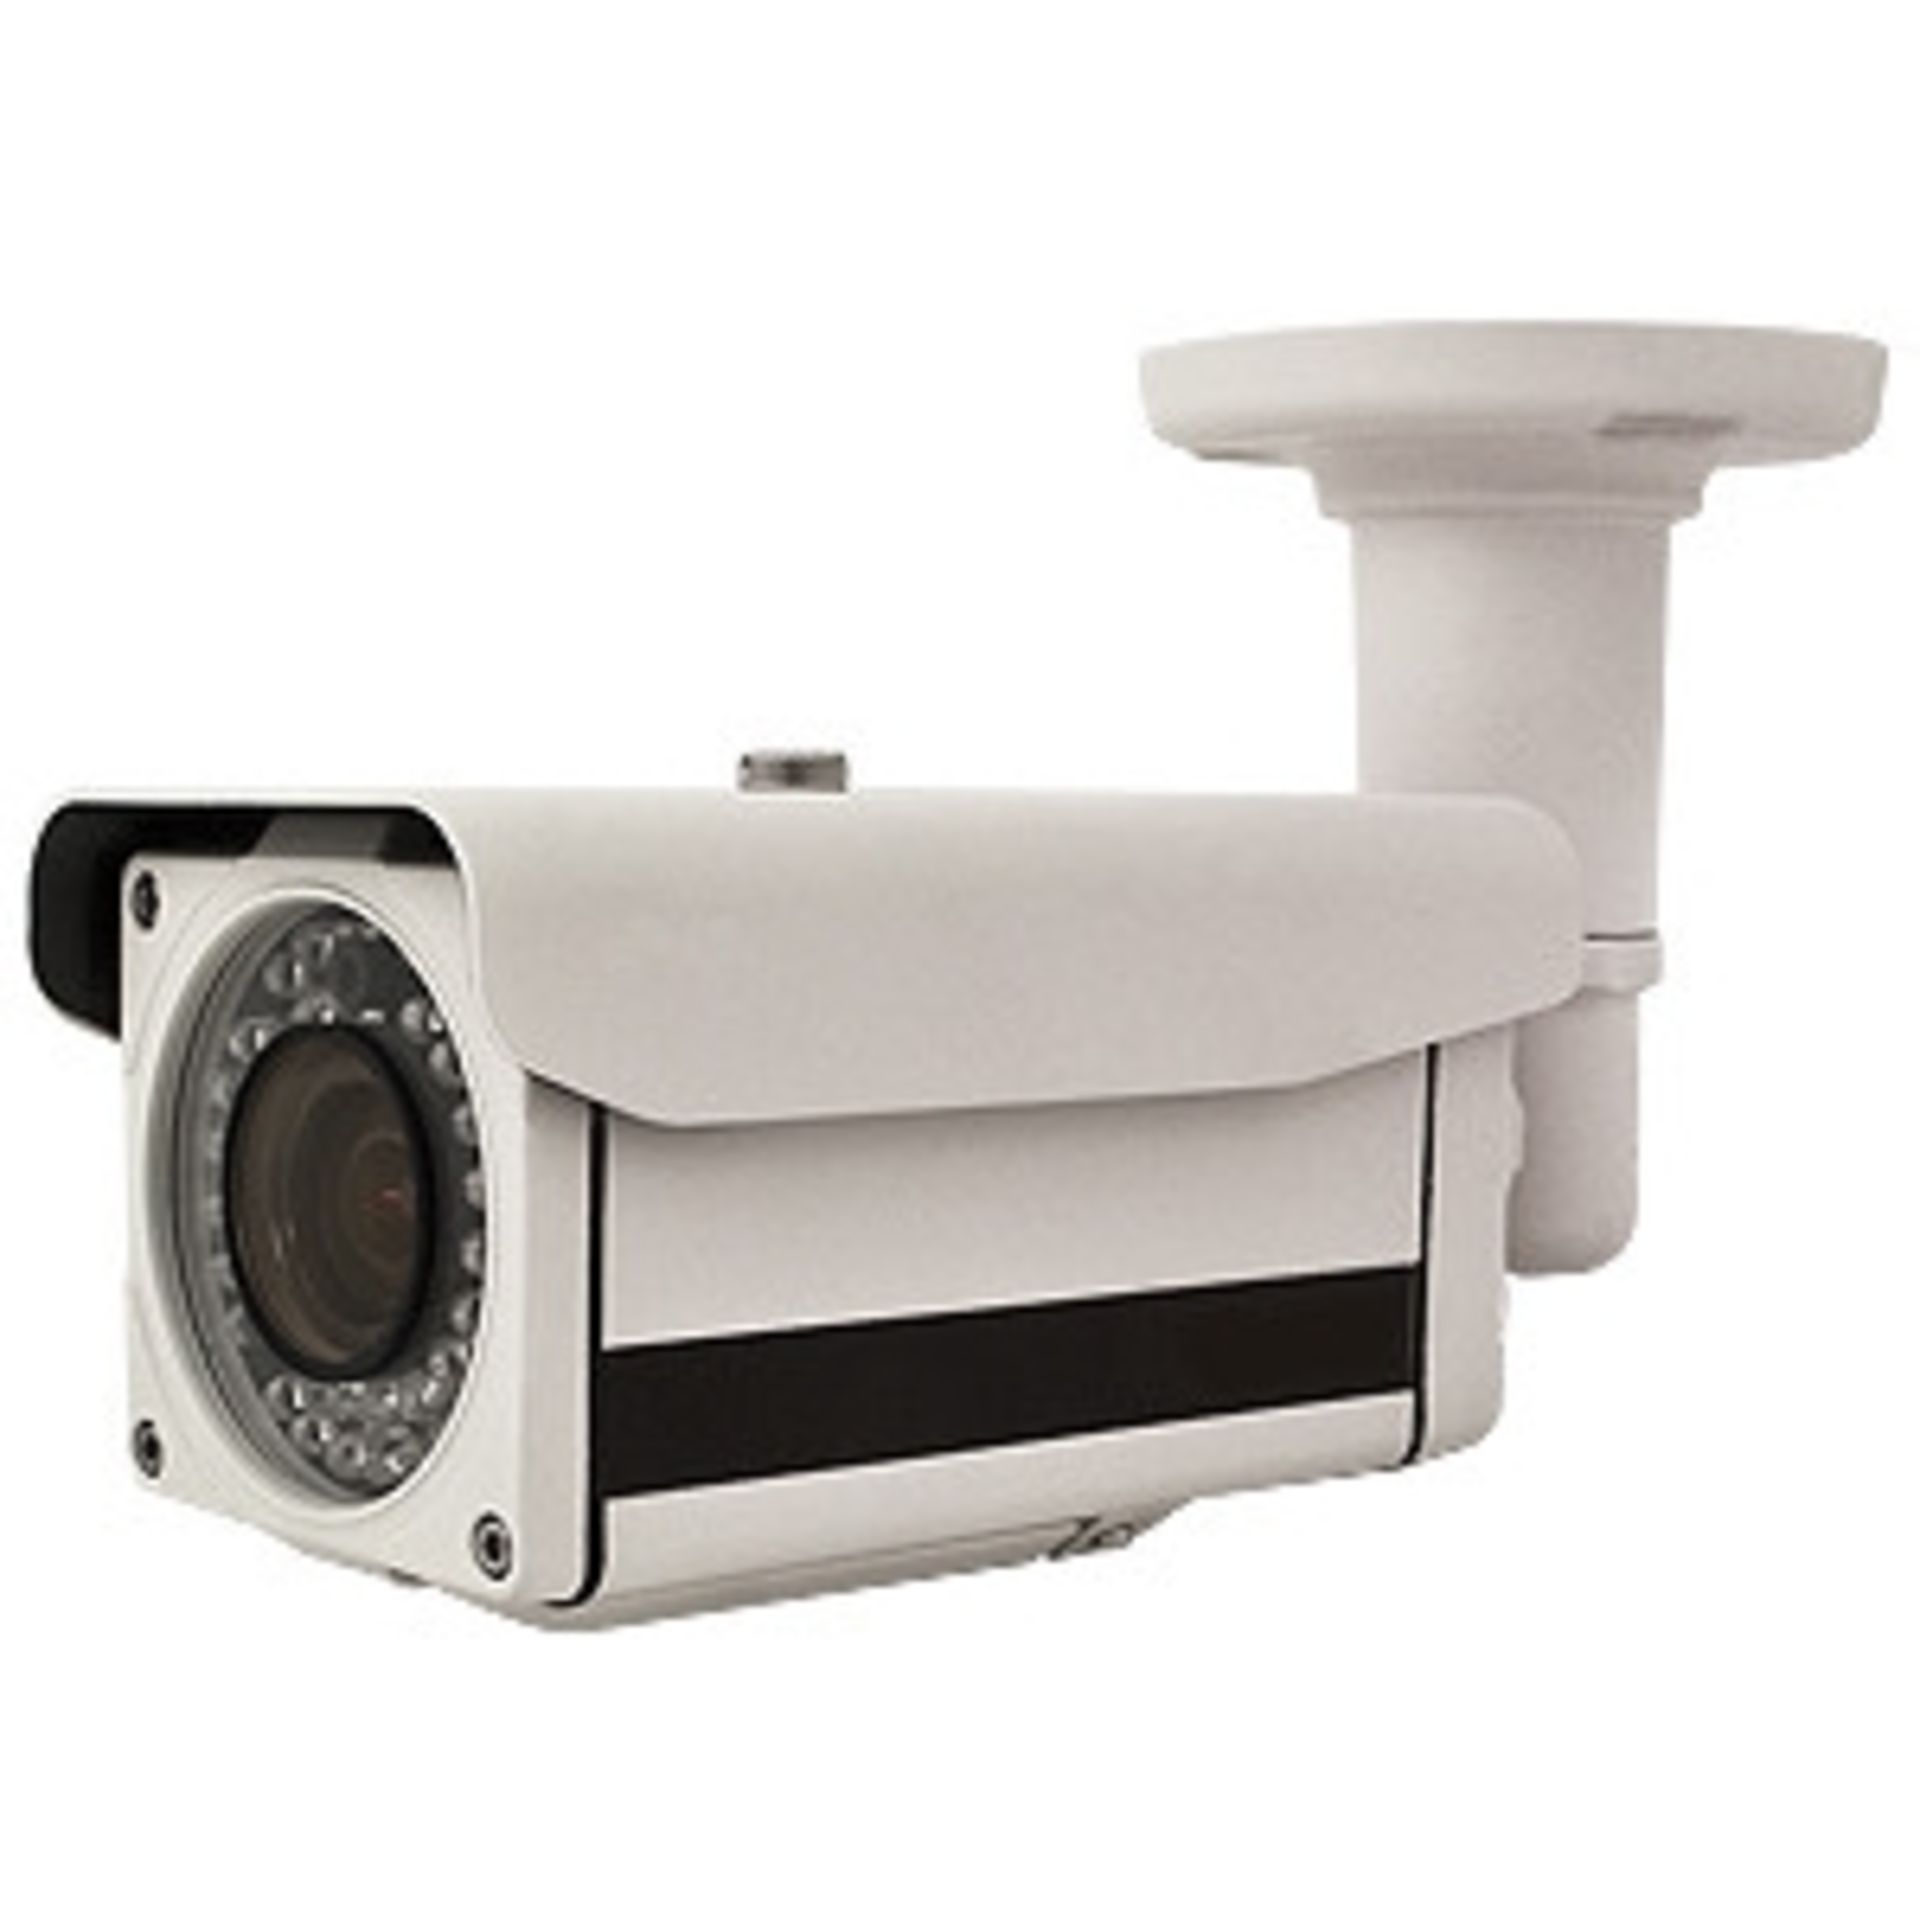 V Brand New Digital CCD BulletCamera - Weather Resistant - 3.5 - 8mm Varifocal Lens - Infra Red - 35